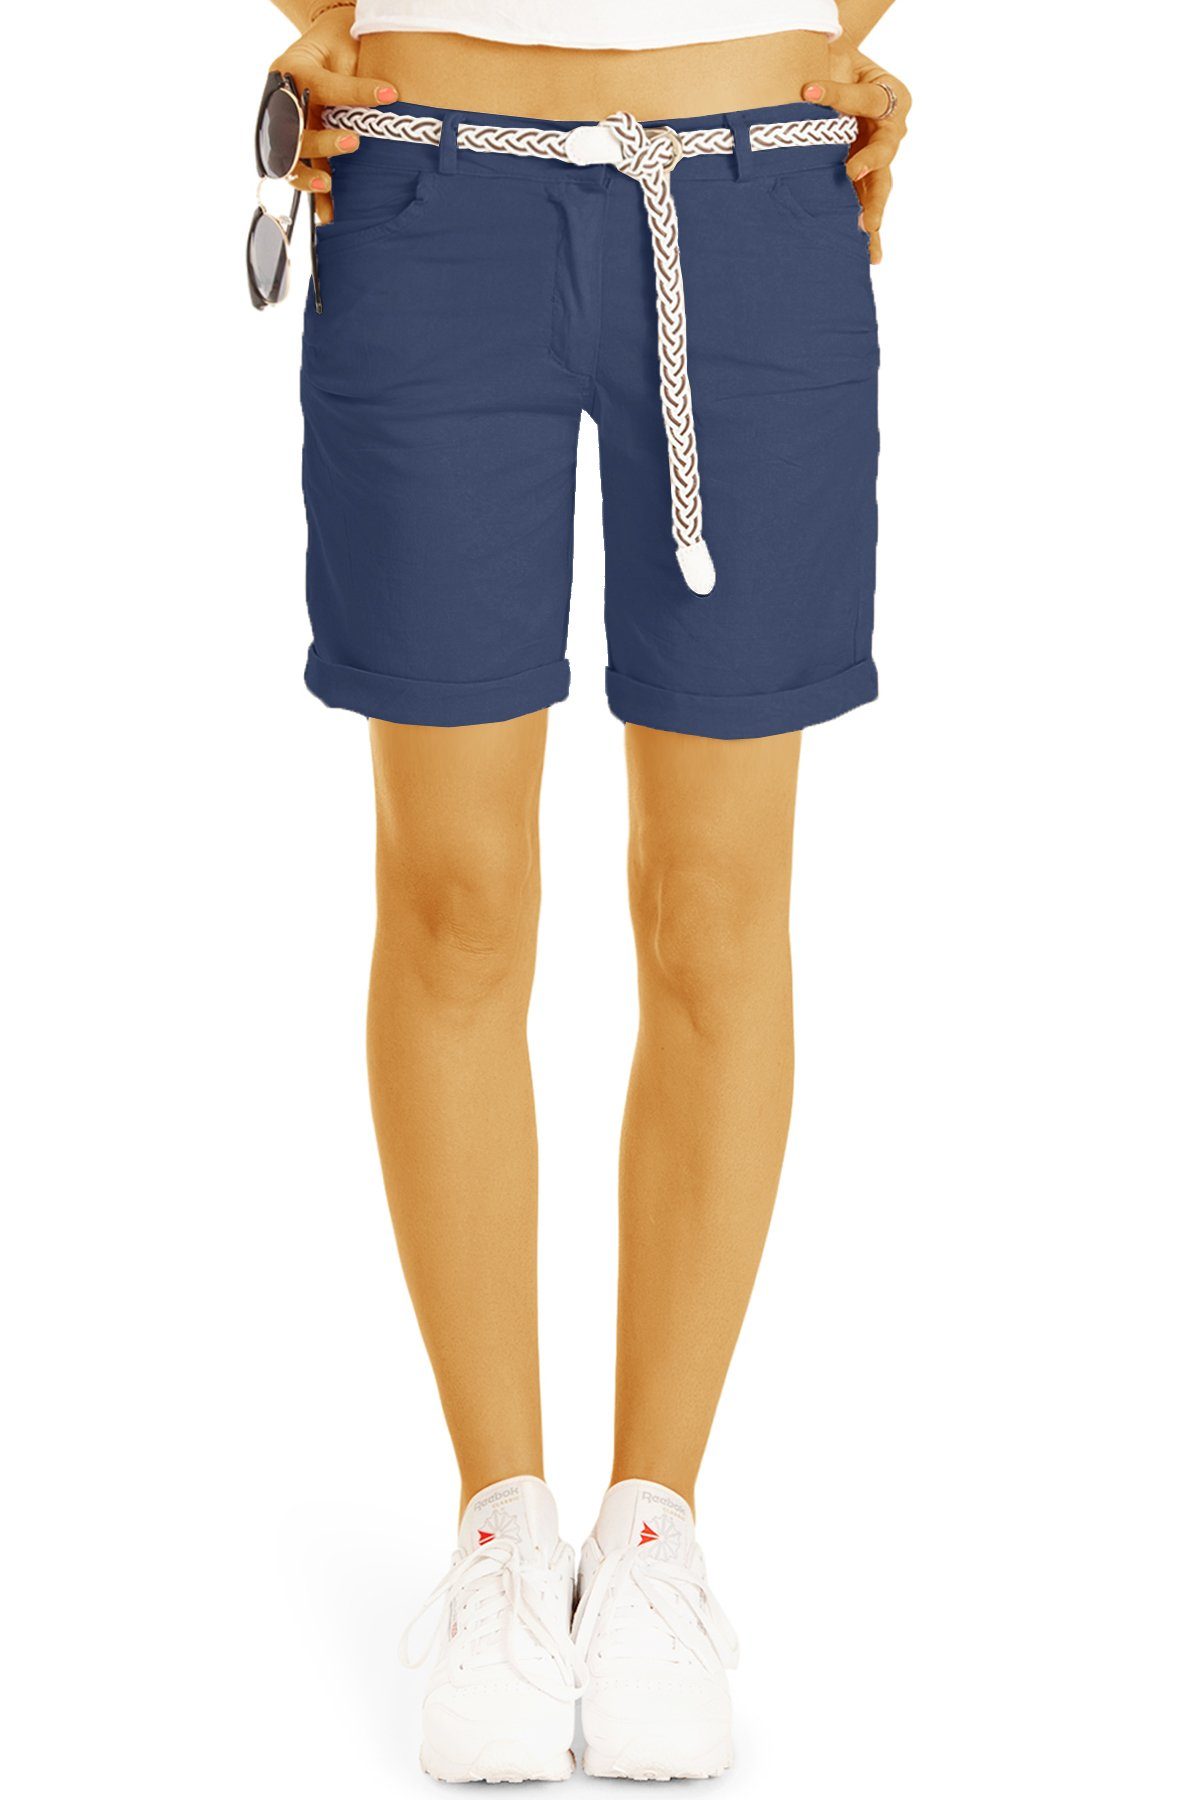 be styled Shorts Chino Stoff Shorts - Kurze lockere Hosen mit Gürtel - Damen - h23a in Unifarben, mit Gürtel dunkelblau